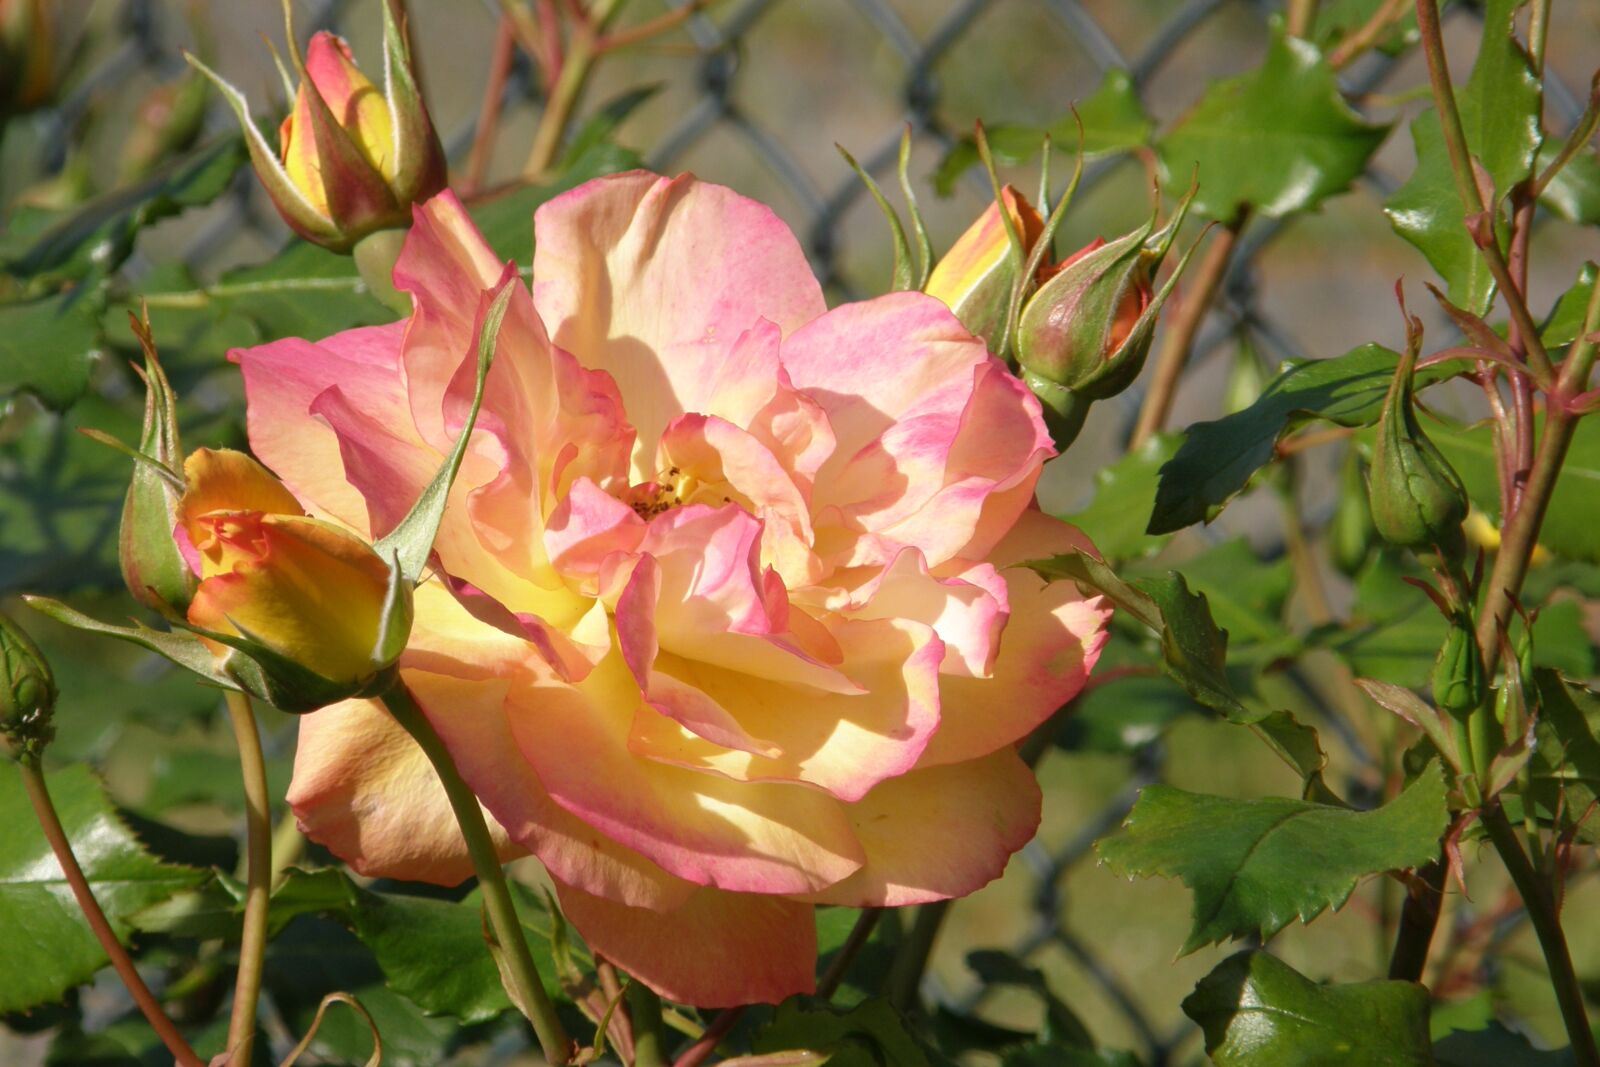 Olympus SP550UZ sample photo. Rose flower, rose bud photography